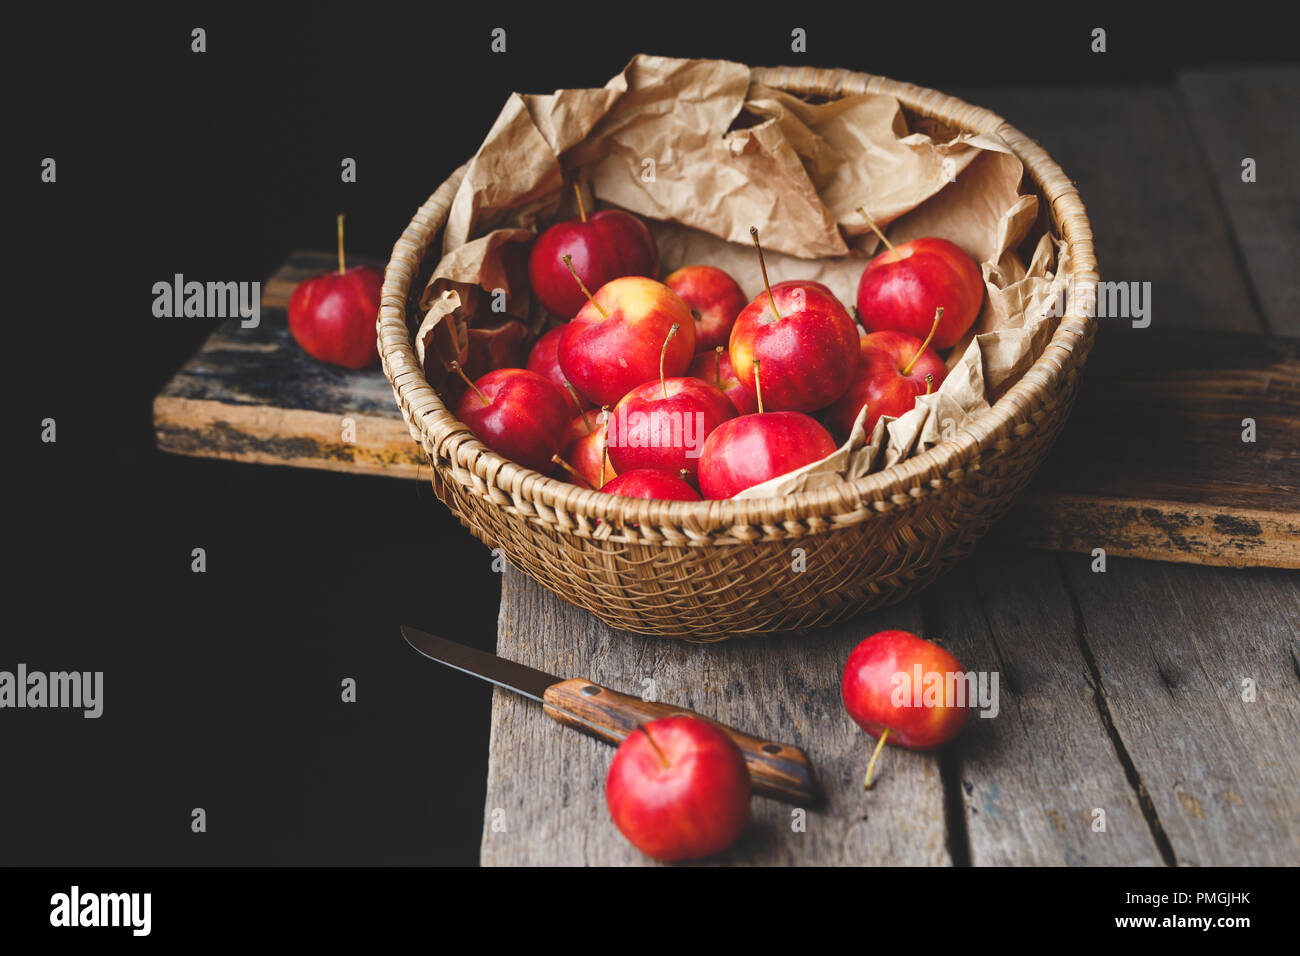 Fresh little apples Stock Photo